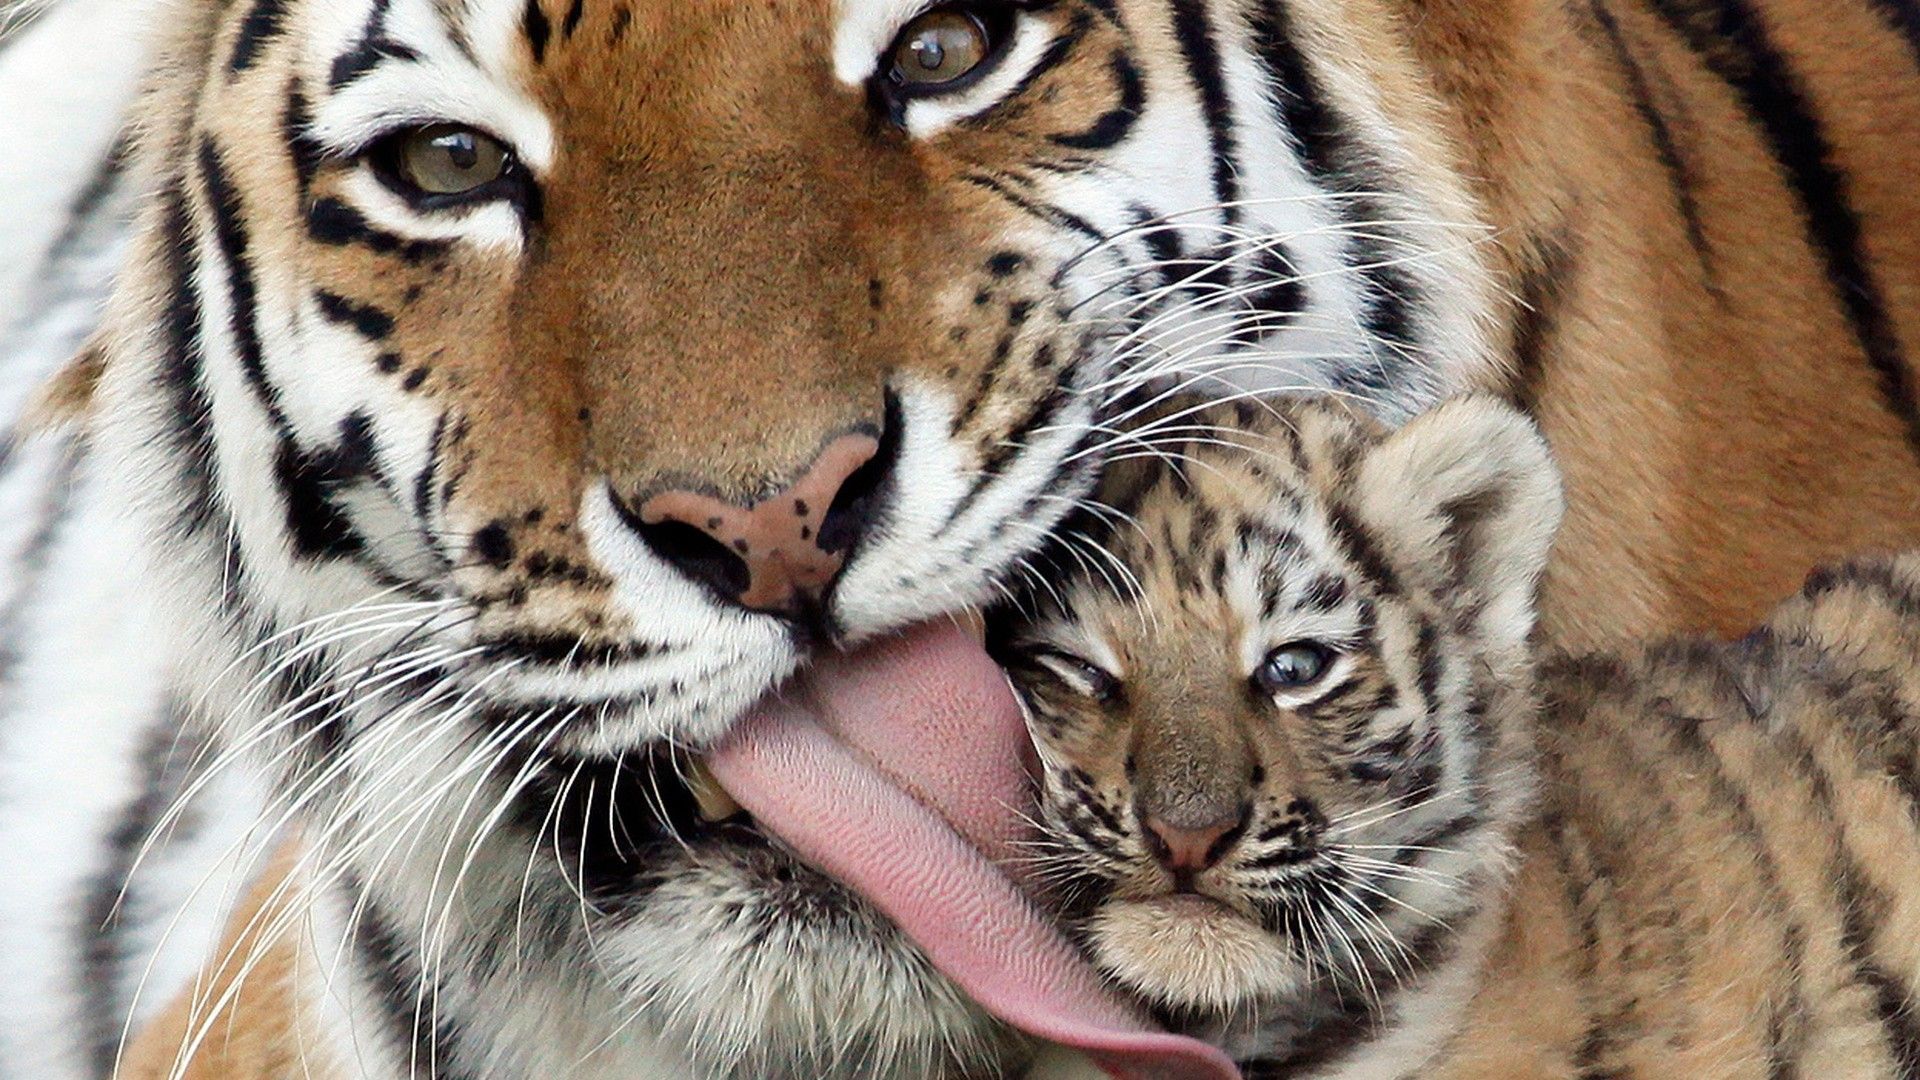 Cute tigers - mom and cub - 1920x1080 - Full HD 16 / 9 - Wallpaper